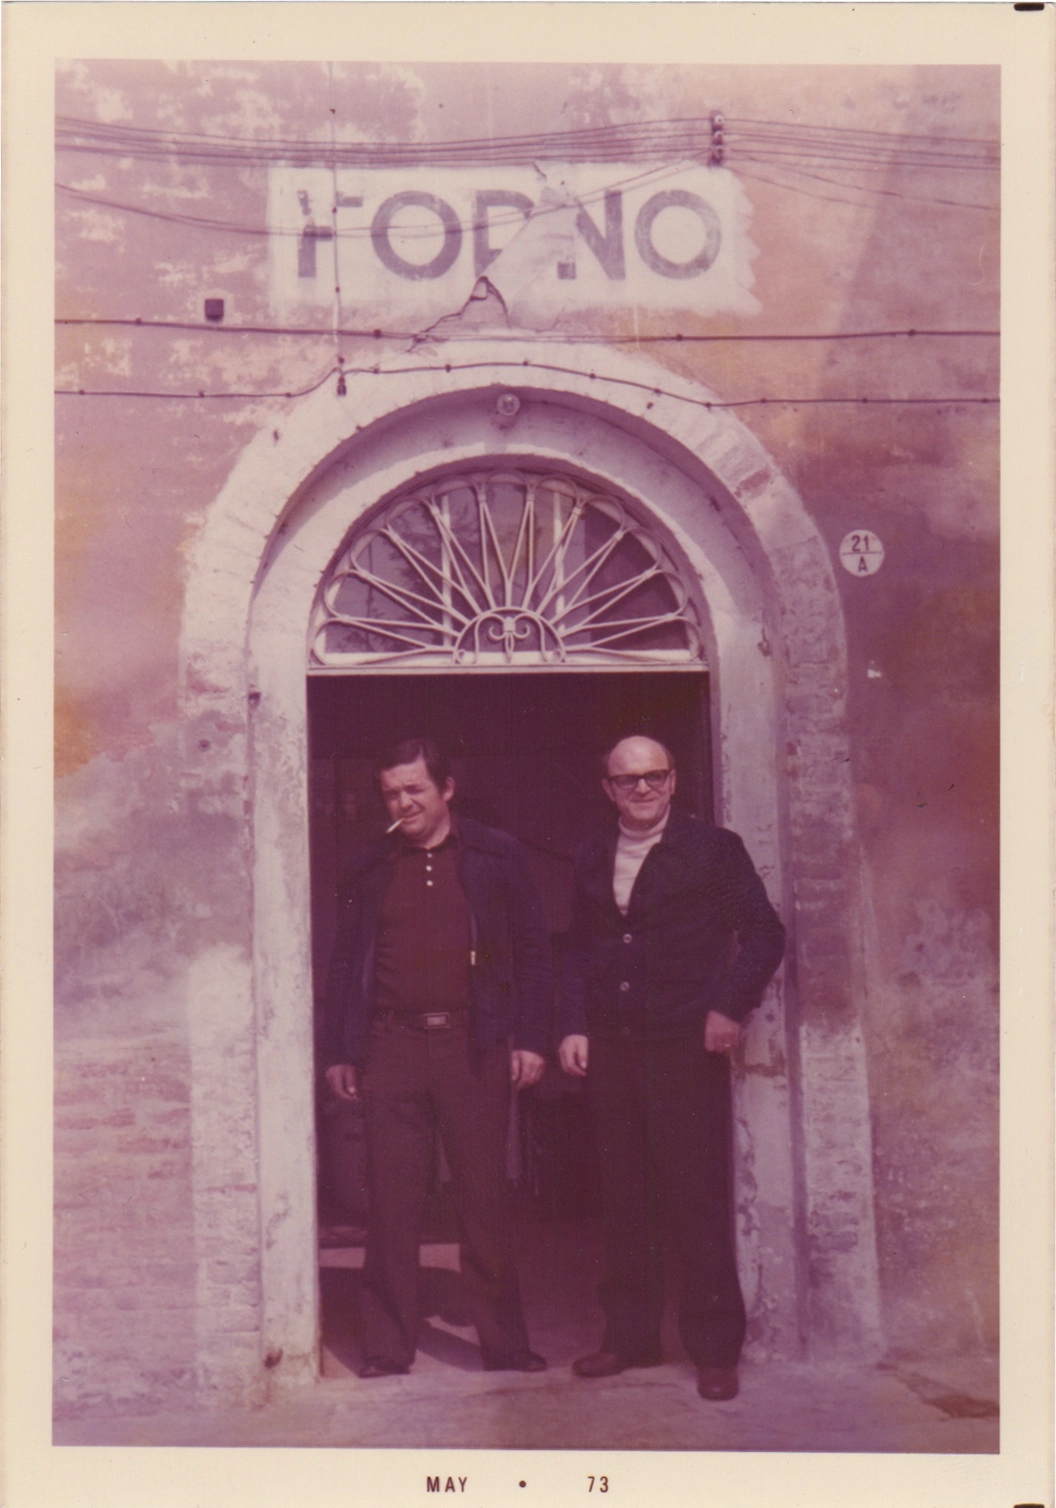 Maggio 1973 apertura del Forno di Sacchetti & Calzoni